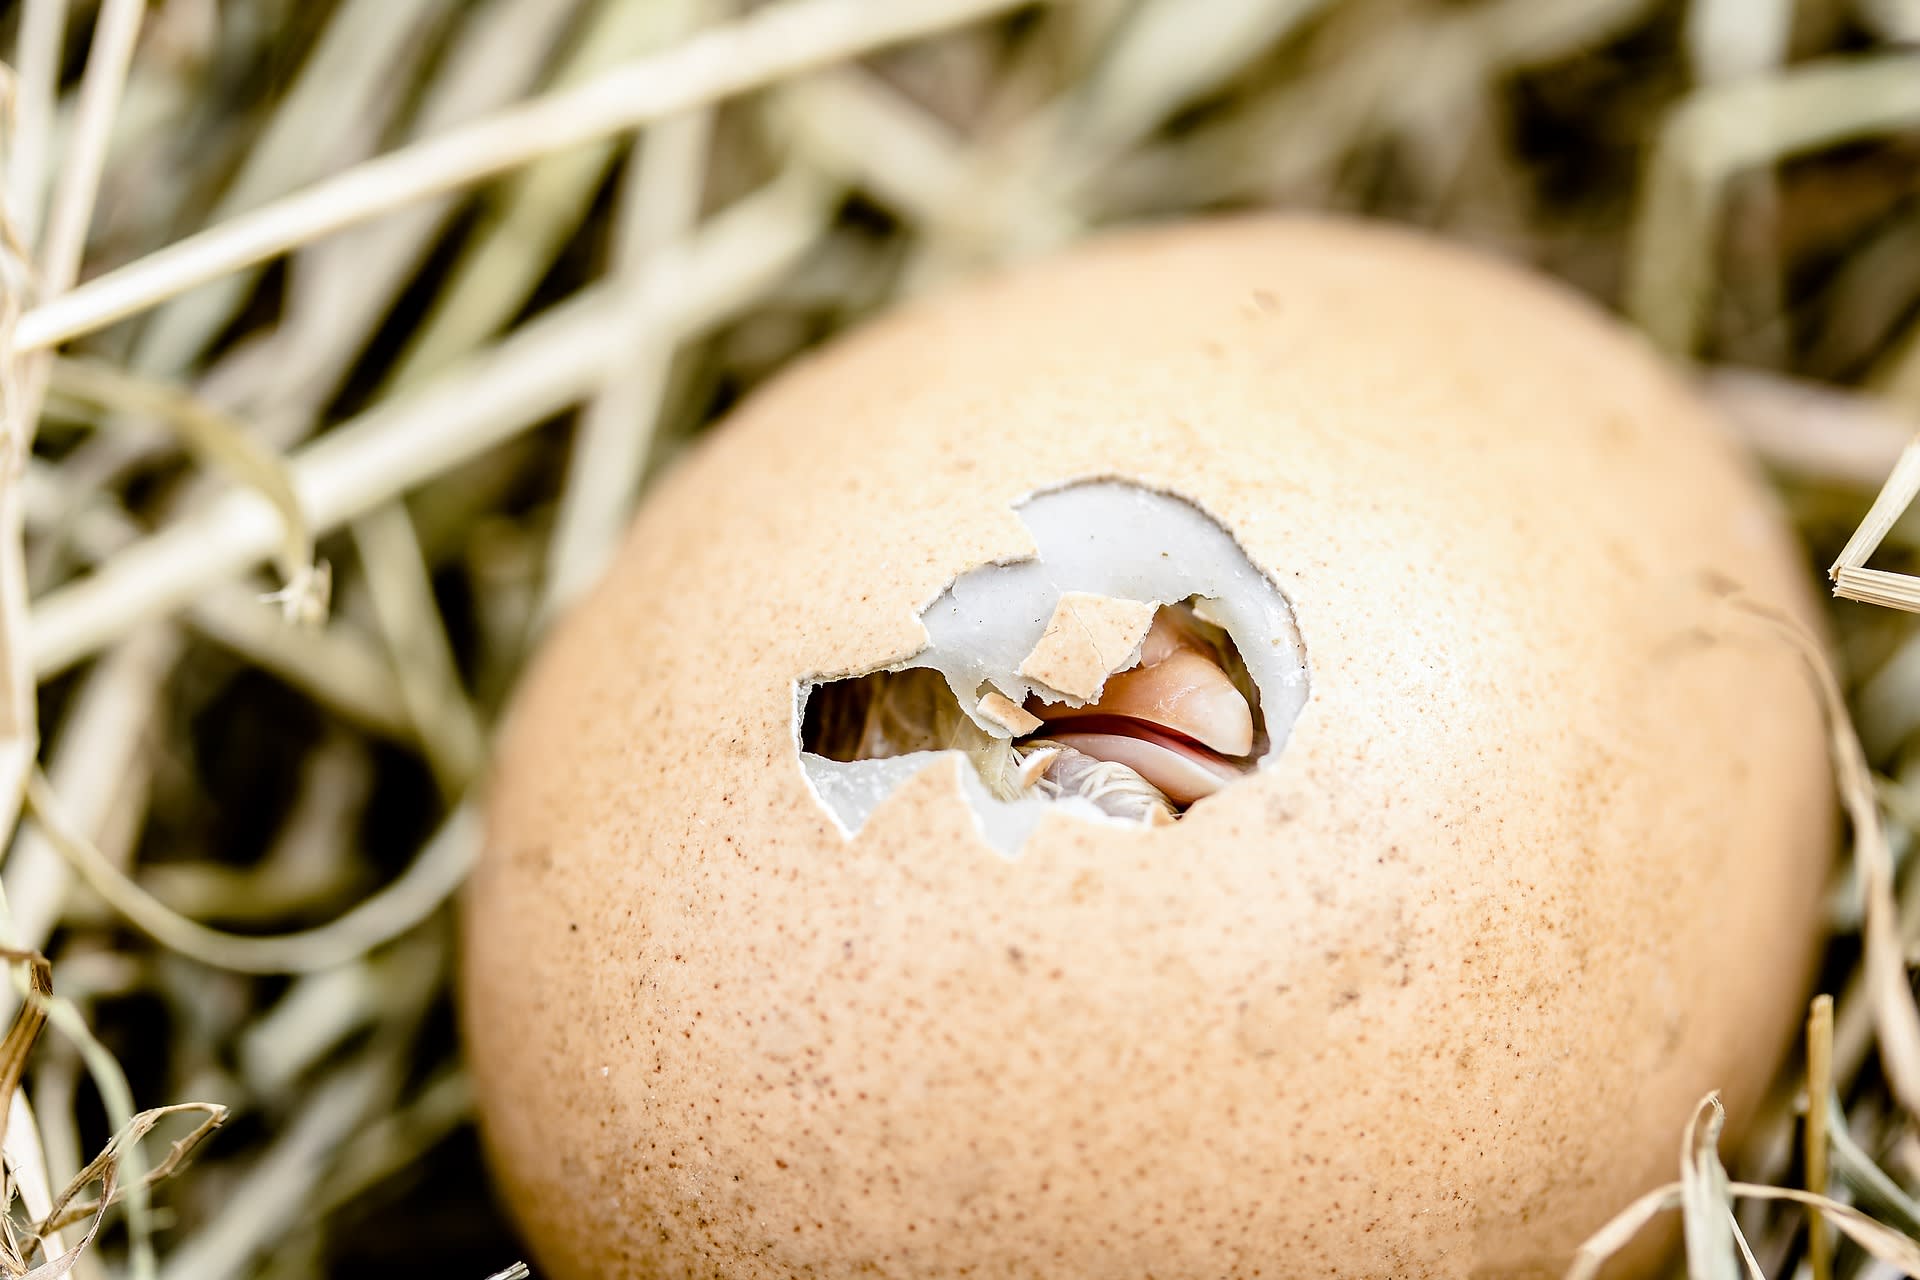 Druhá fáze návrhu zákona nařizuje likvidaci vajec se samci do sedmého dne, kdy embrya začínají cítit bolest.